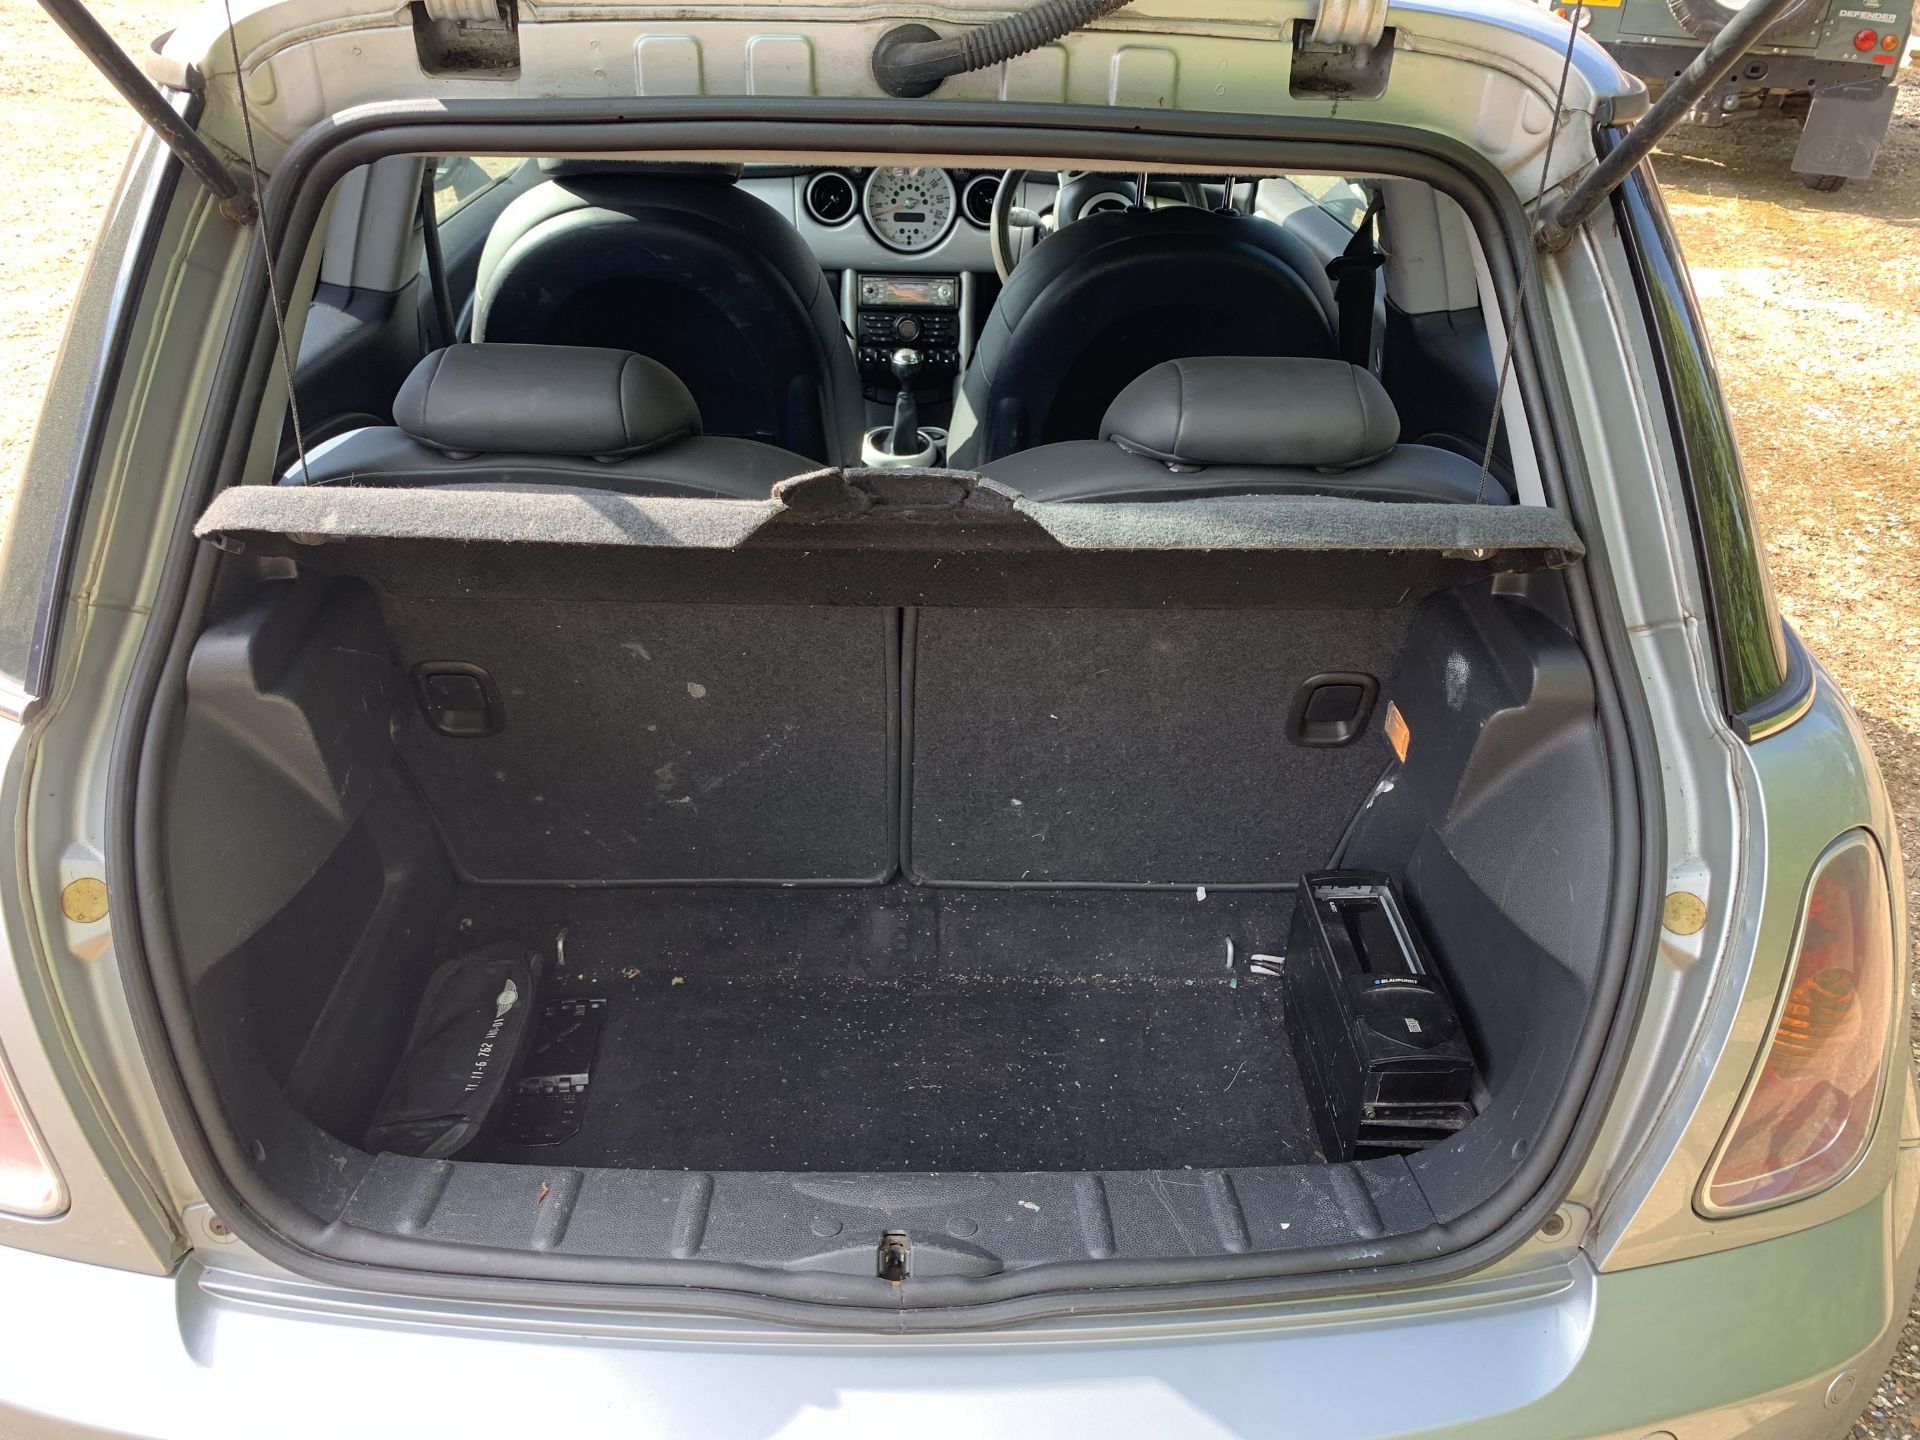 Mini Cooper S car, YX52 AHJ, 74,000 miles, 1.6l petrol, 7 months MOT, V5, 2 keys, NO VAT - Image 7 of 7